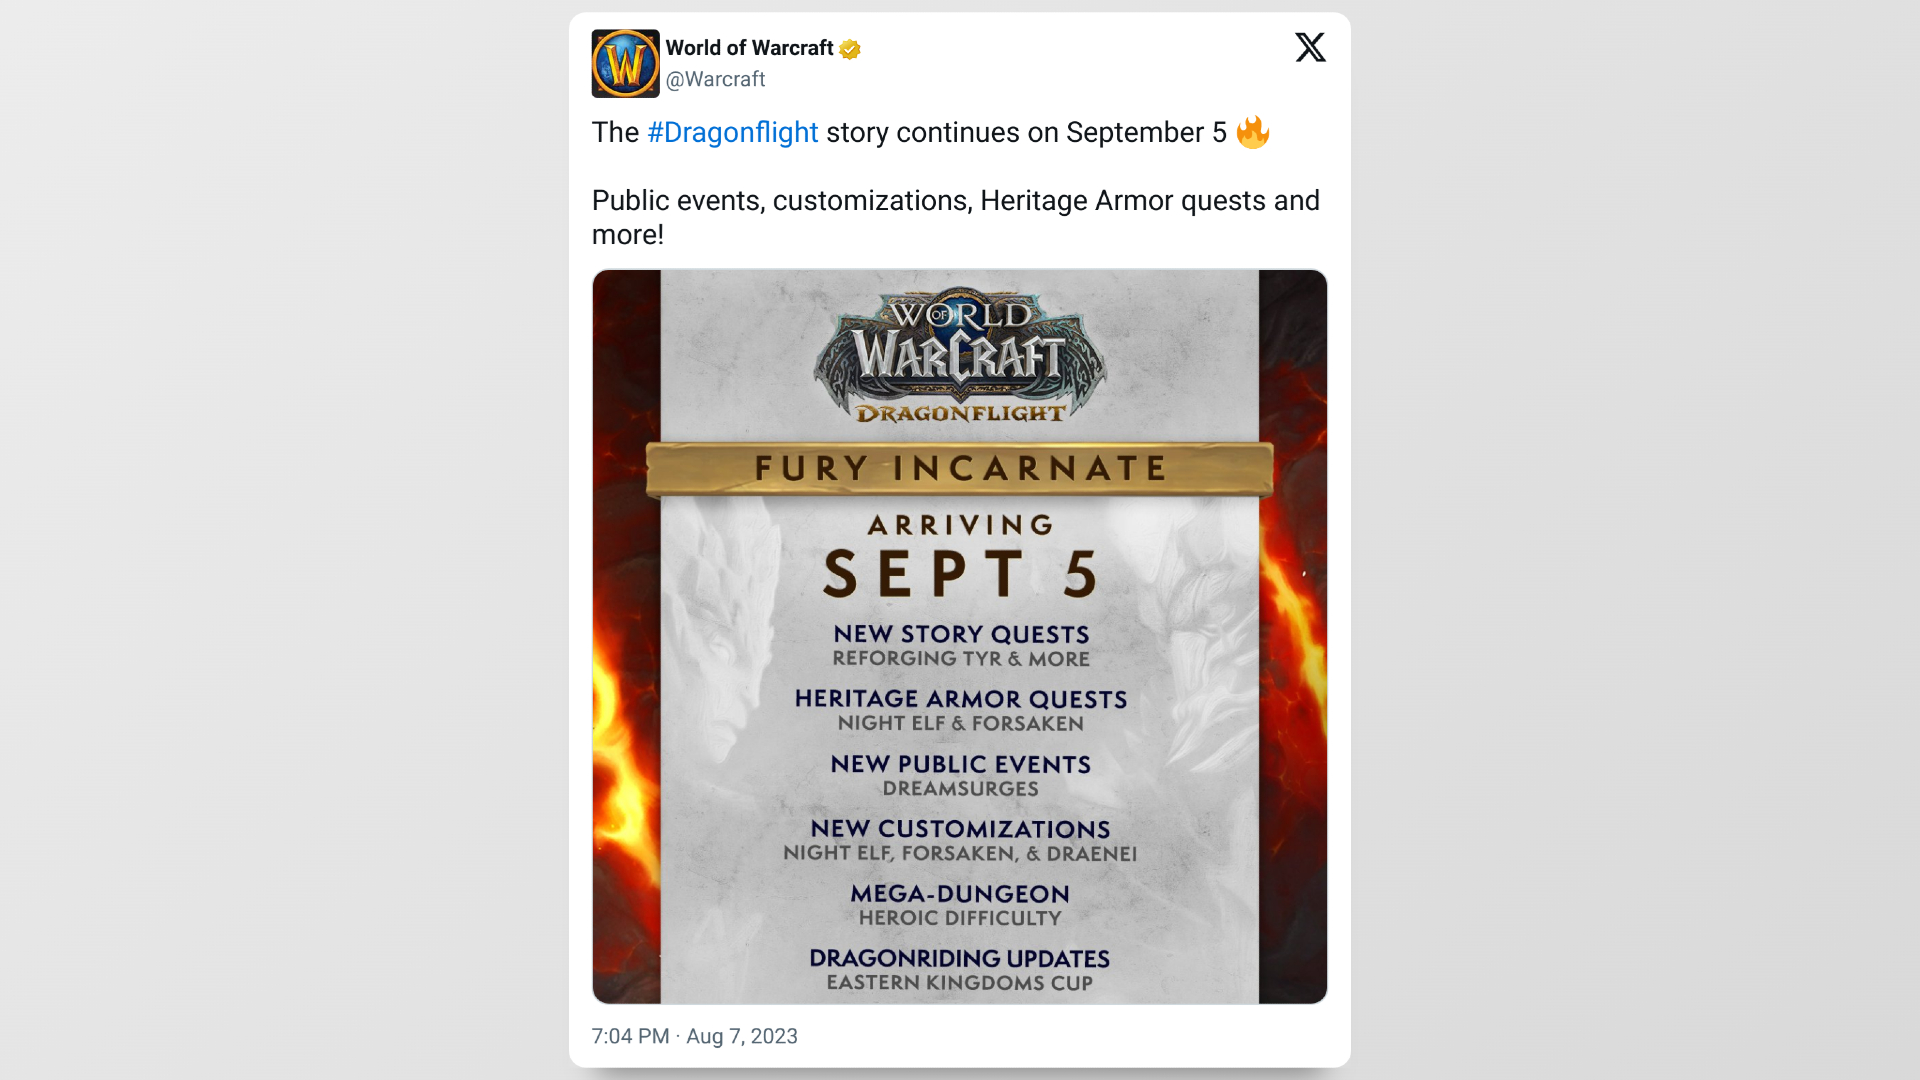 Tweet vom offiziellen Account von World of Warcraft, in dem das Veröffentlichungsdatum des Patches besprochen wird